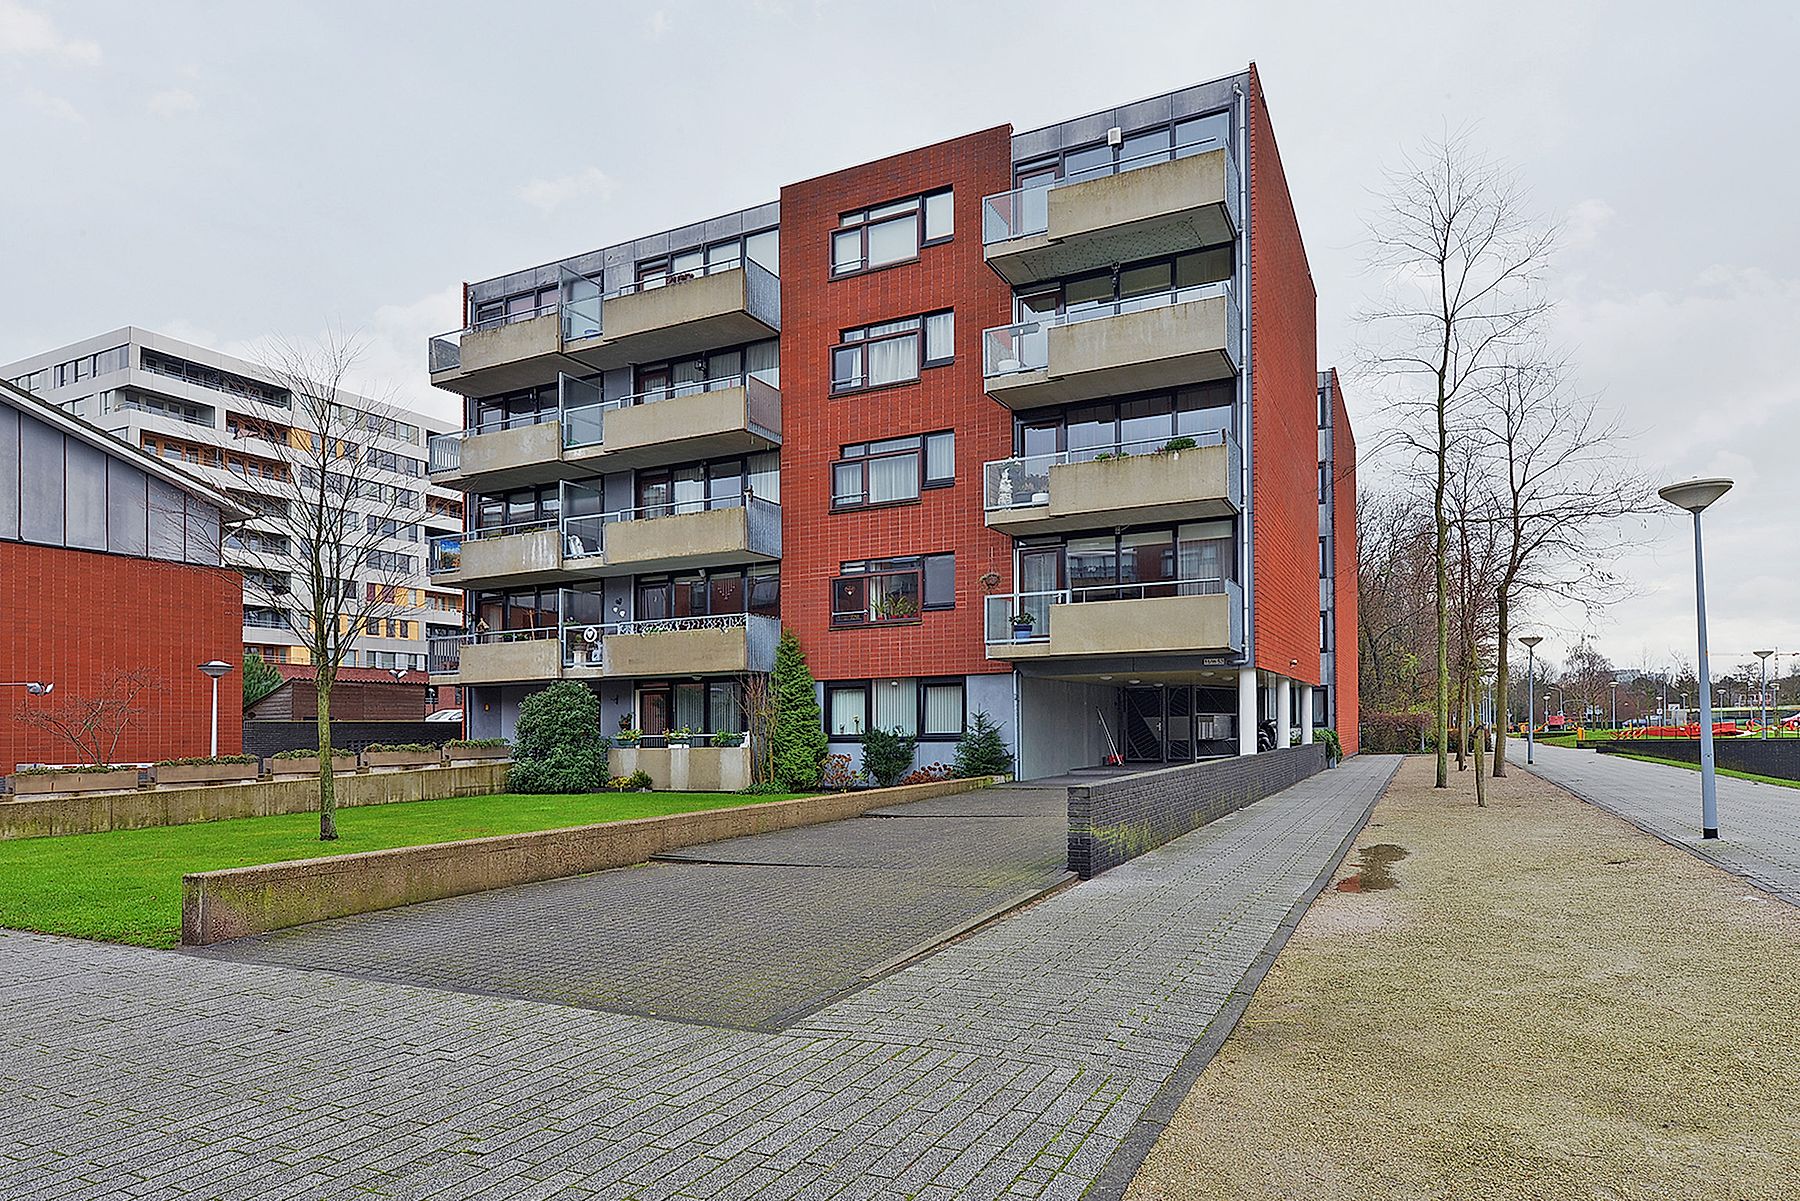 Bekijk foto 1/5 van apartment in Hoofddorp